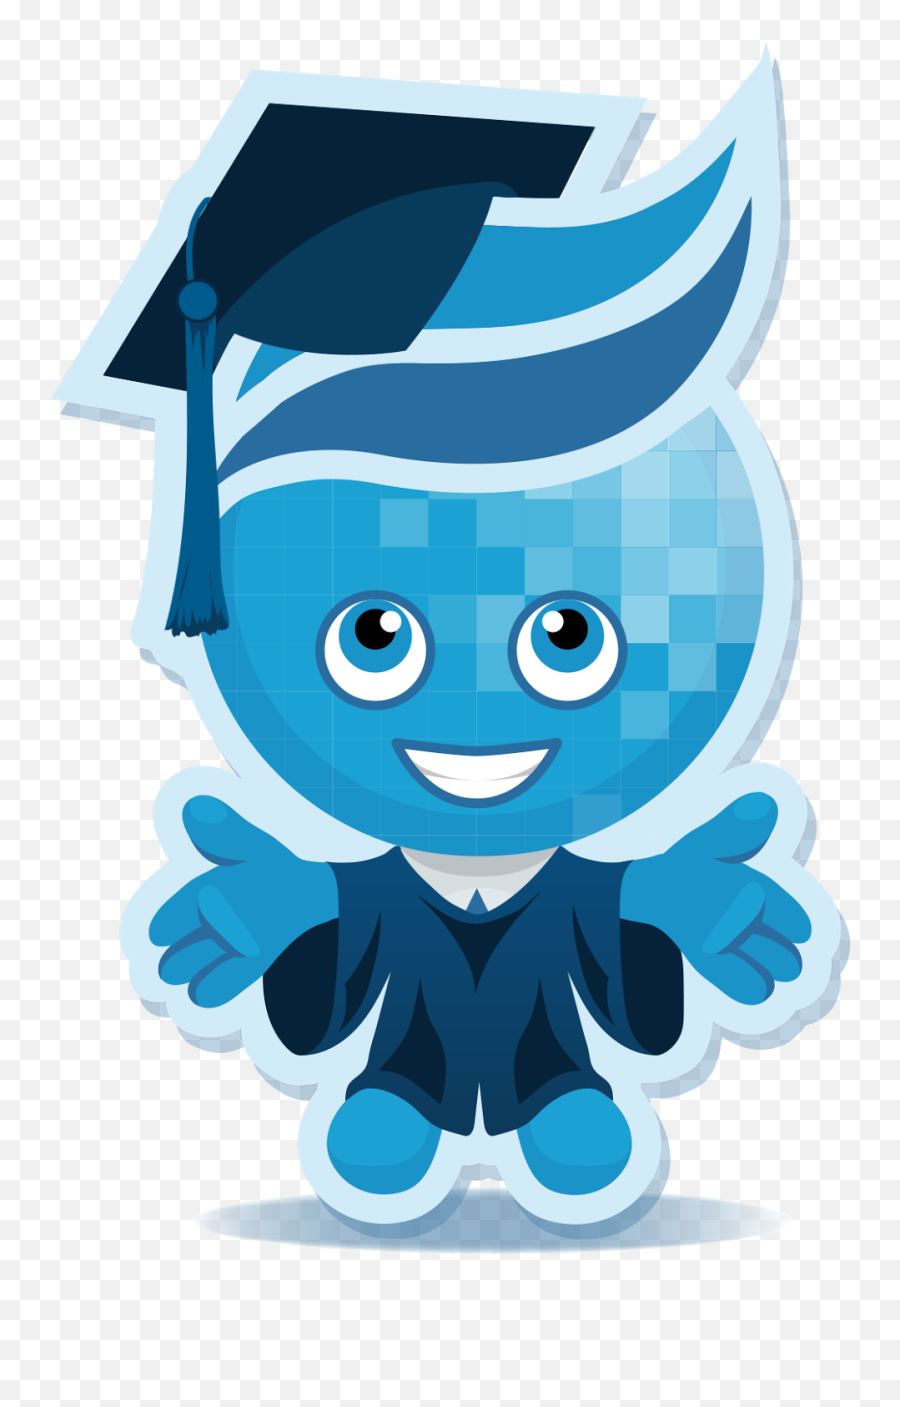 April 2017 - Rio Salado Mascot Emoji,How To Contain Emotion At College Graduation